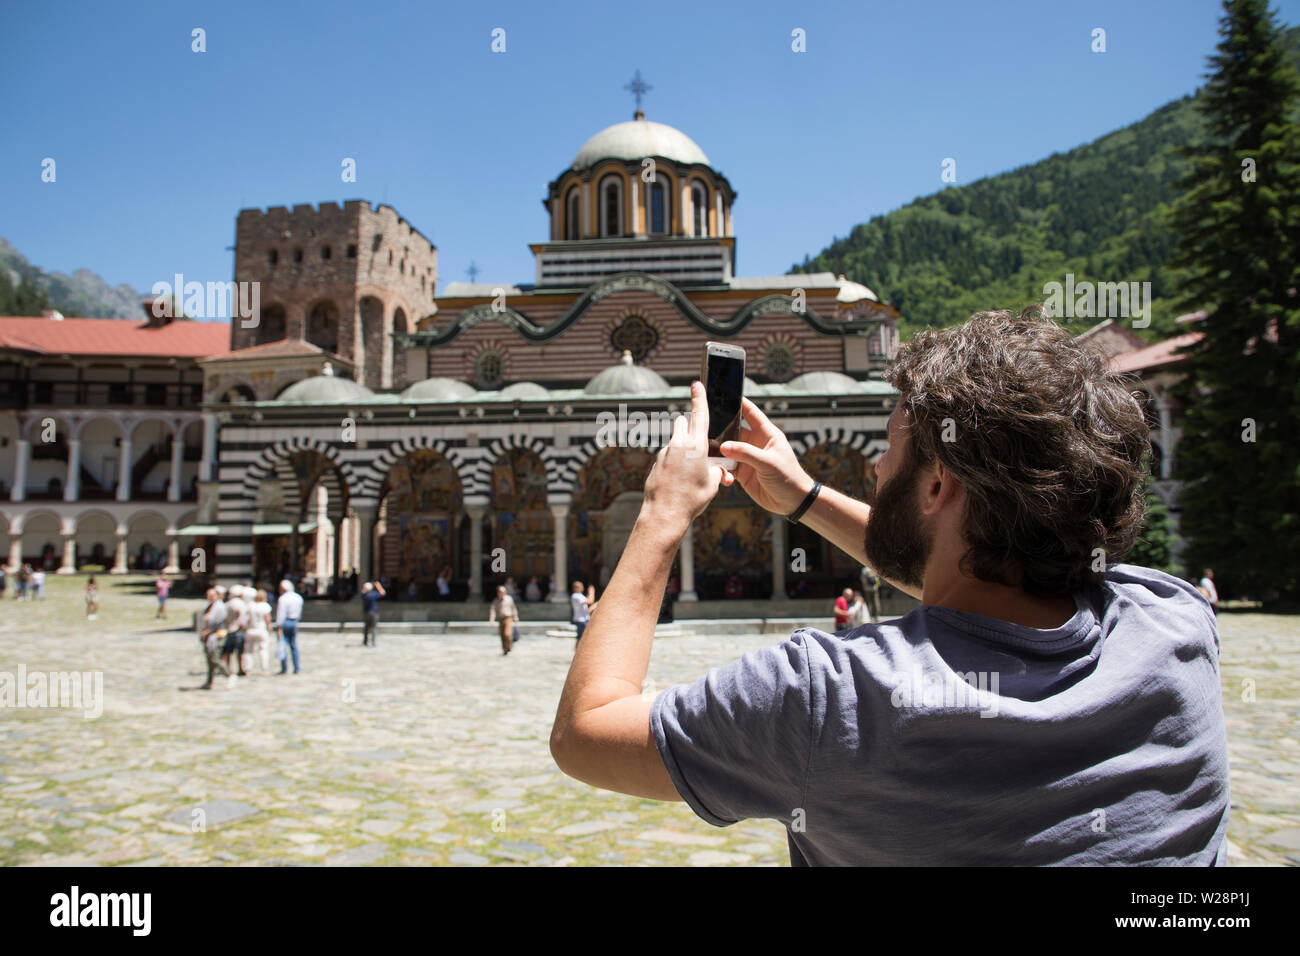 Il monastero di Rila, Bulgaria - Luglio 06, 2019: la chiesa ortodossa orientale sul Monastero di Rila motivi, il più grande della Bulgaria. Un uomo è fotografare t Foto Stock